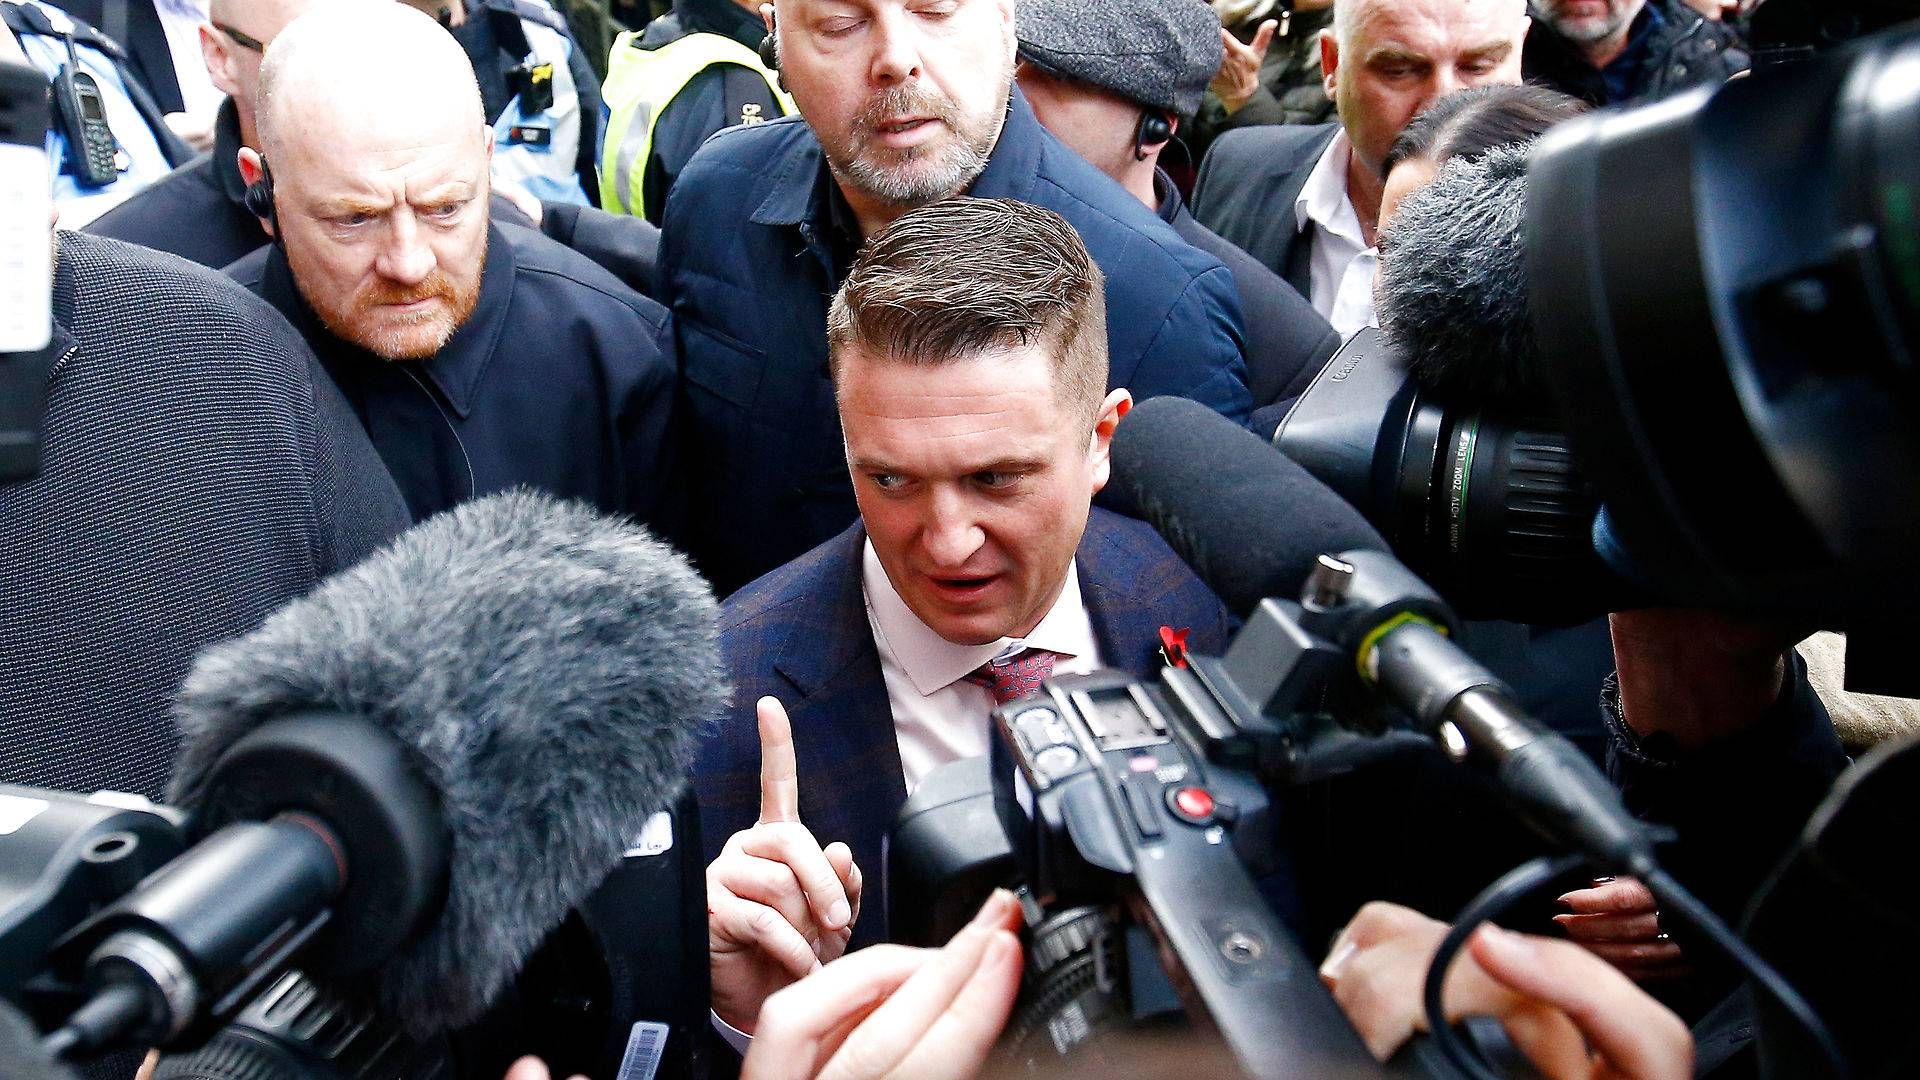 Tommy Robinson, den stærkt højreorienterede aktivist fra Storbritannien, har tidligere være fængslet for flere forbrydelser og har været med til at grundlægge English Defence League. | Foto: Henry Nicholls/Reuters/Ritzau Scanpix